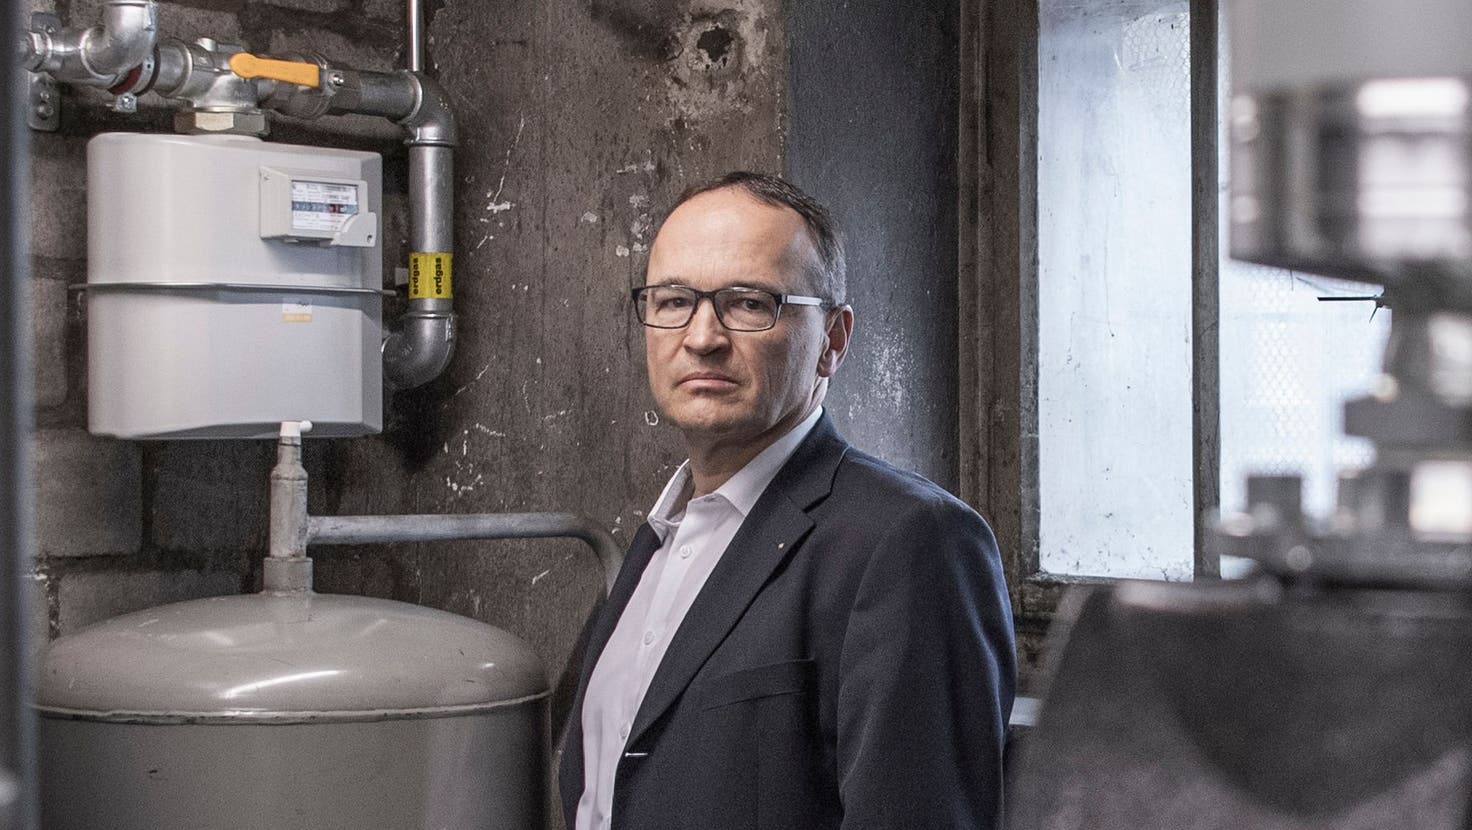 Garagen-Inhaber Stefan Epper im Keller bei der Gasheizung seiner Filiale in Luzern. (Bild: Pius Amrein  (20. 3. 2023))